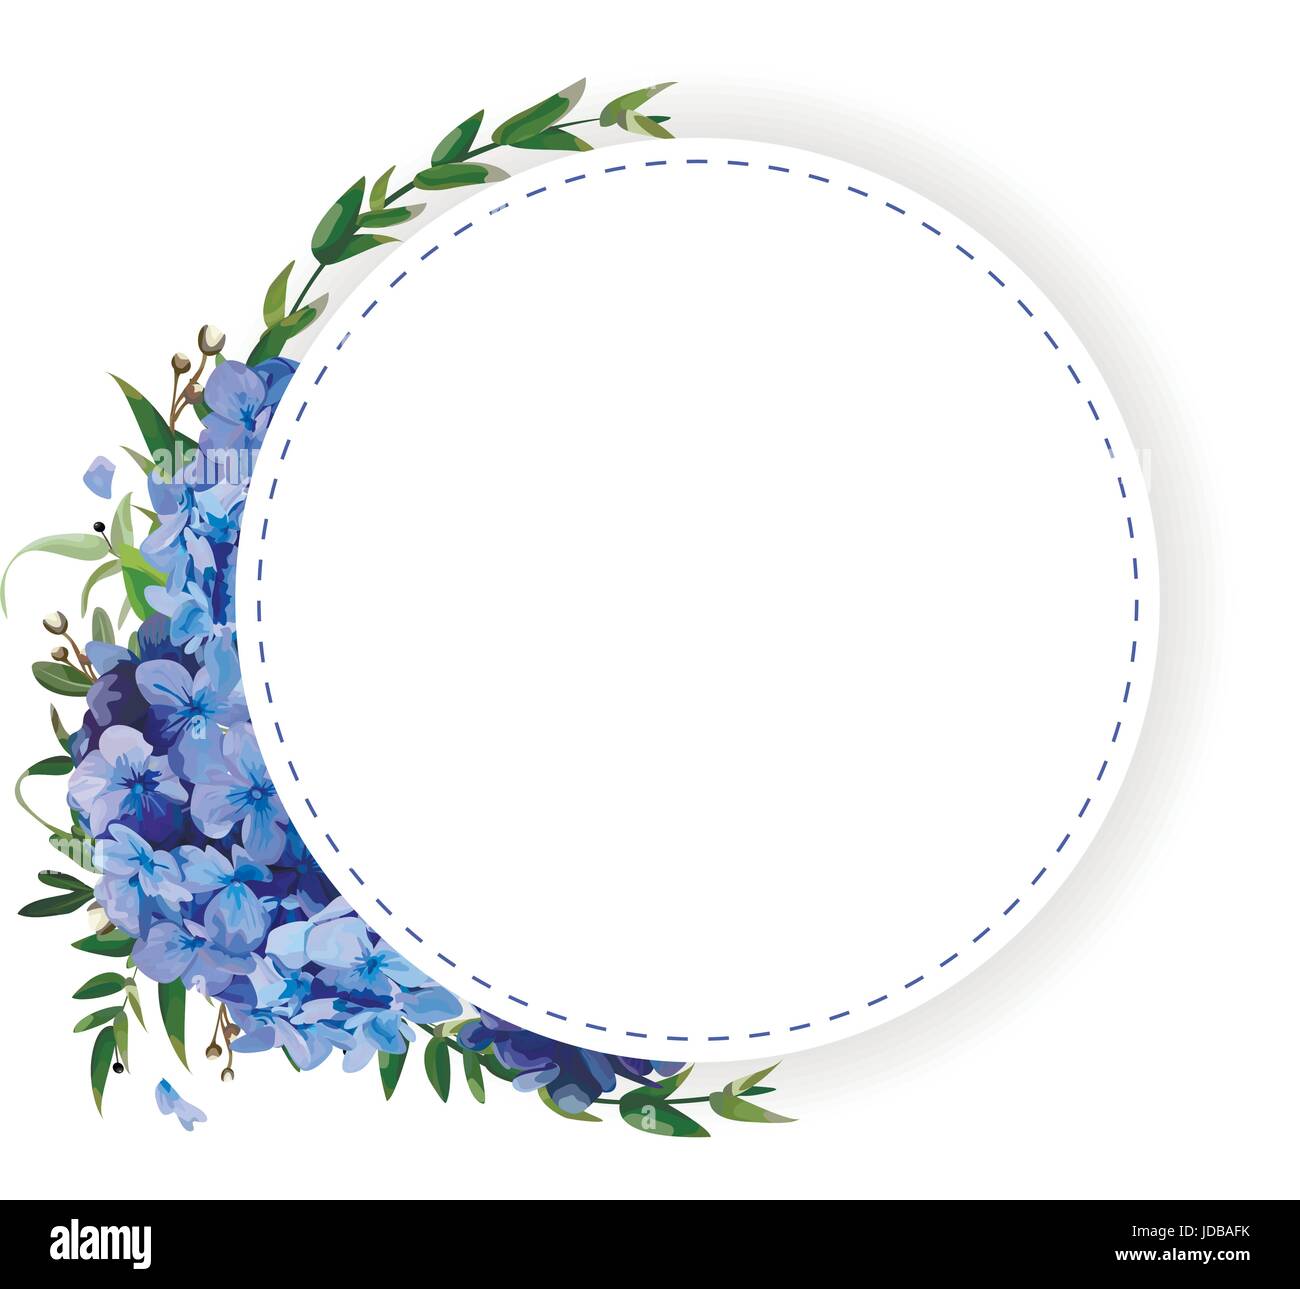 Rund um Kreis, Blume, Kranz Coronet Blaue Hortensie, Hortensia Blumen, grüne Eukalyptus Blätter schöne schöne Sommer-Blumenstrauß-Vektor-illustration Stock Vektor